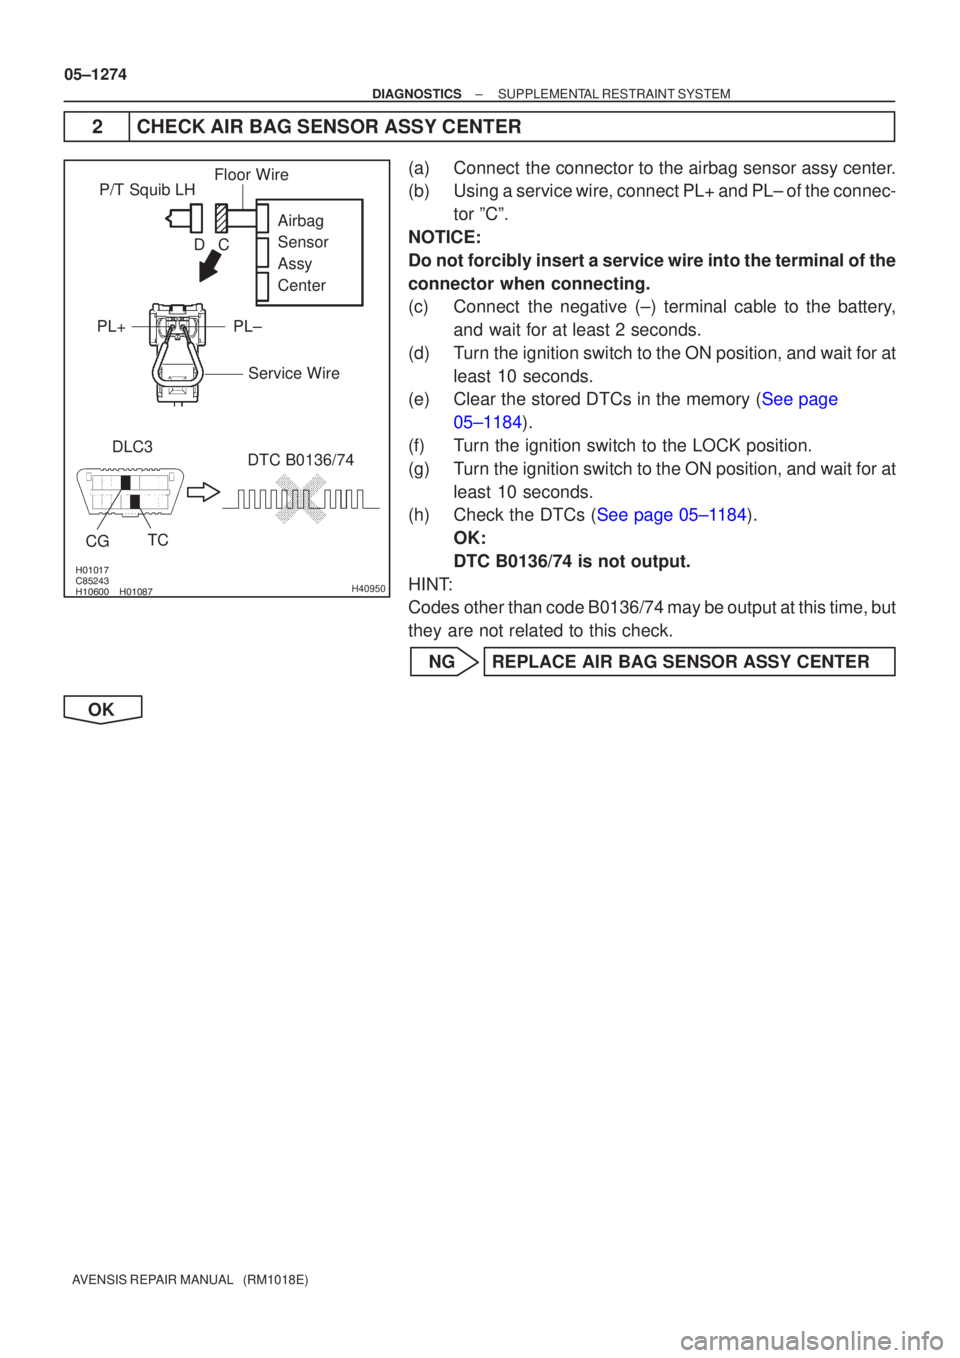 TOYOTA AVENSIS 2005  Service Repair Manual \b

	
 	\b
H40950
P/T Squib LHDLC3 TC
CG
DTC B0136/74 Airbag
Sensor
Assy
Center
PL±
PL+
Floor Wire
Service Wire
C
D
05±1274
±
DIAGNOSTICS SUPPLEMENTAL RESTRAINT SYSTEM
AVENSIS RE